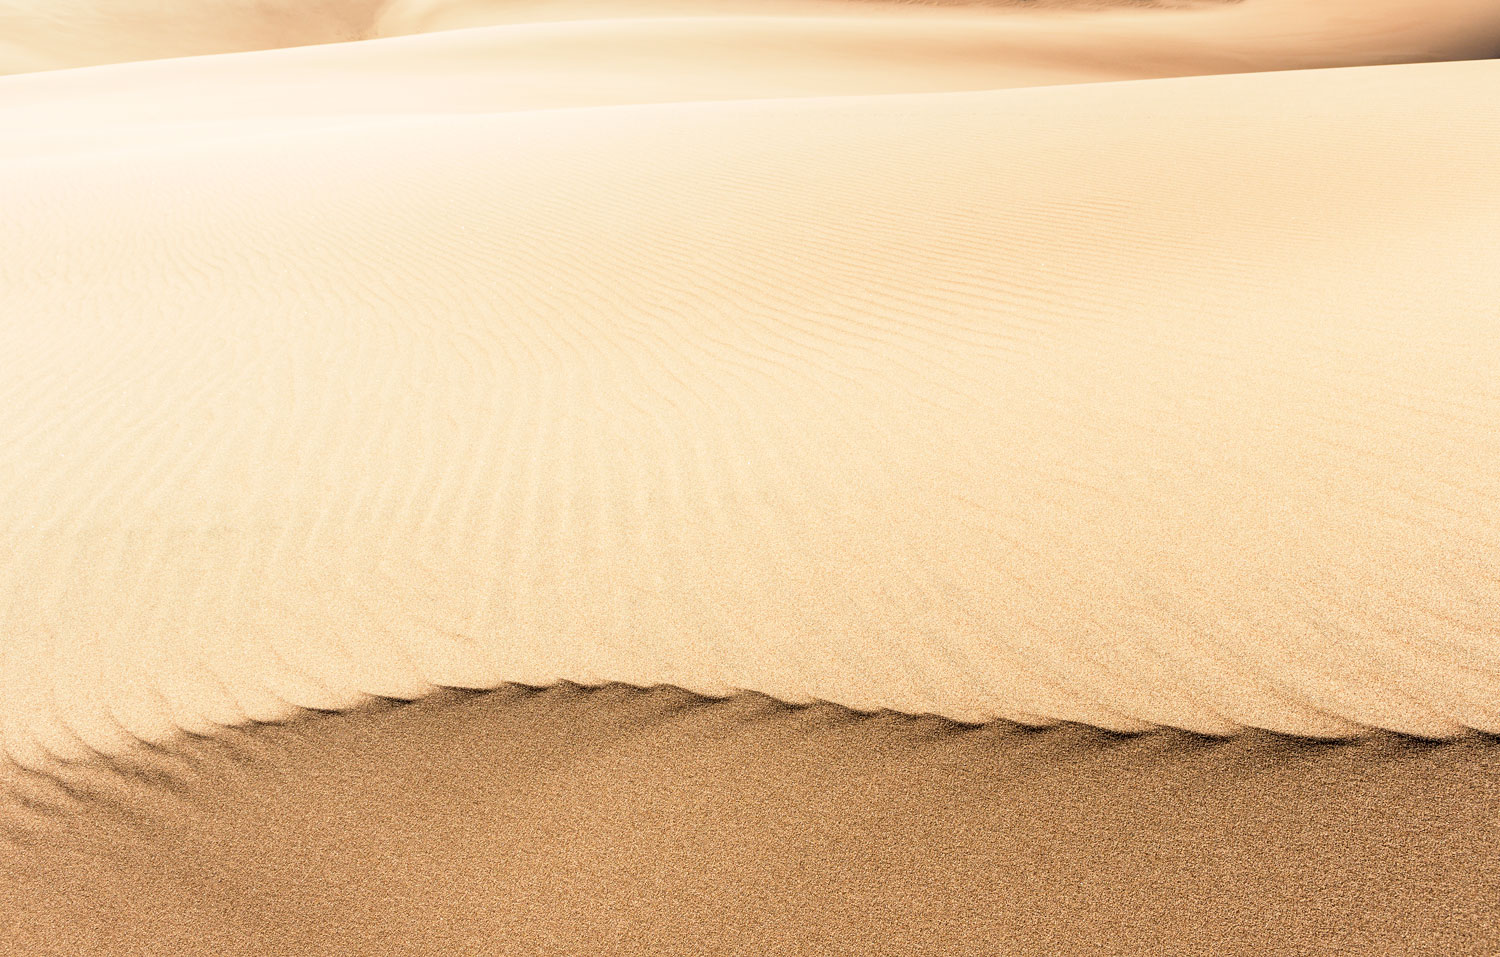 Curvature. Great Sand Dunes National Park, CO